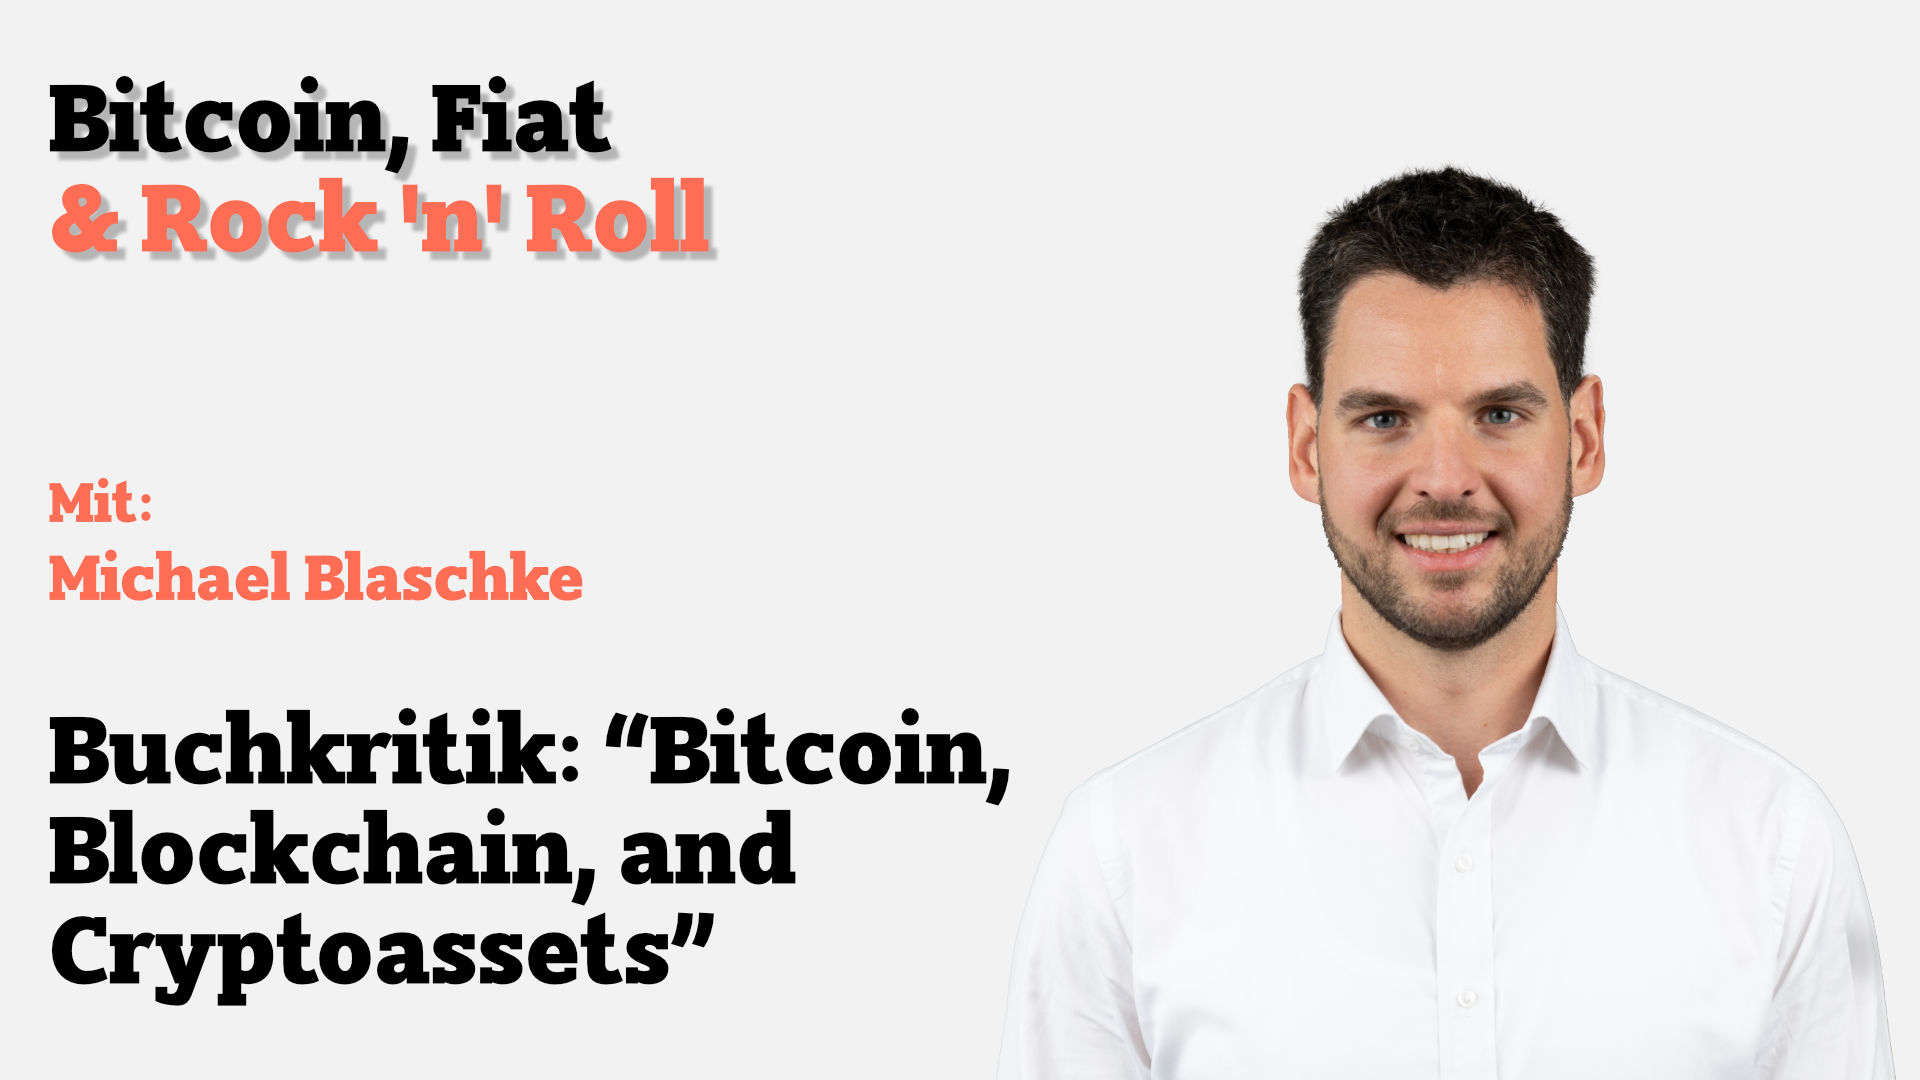 In der heutigen Episode starten wir durch mit Buchkritiken, einer neuen Serie an Episoden. Wir, die Co-Hosts von Bitcoin, Fiat & Rock’n’Roll, werden häufig gefragt, wie wir unser Wissen zu den Themen des Podcast aufbauen und frisch halten.